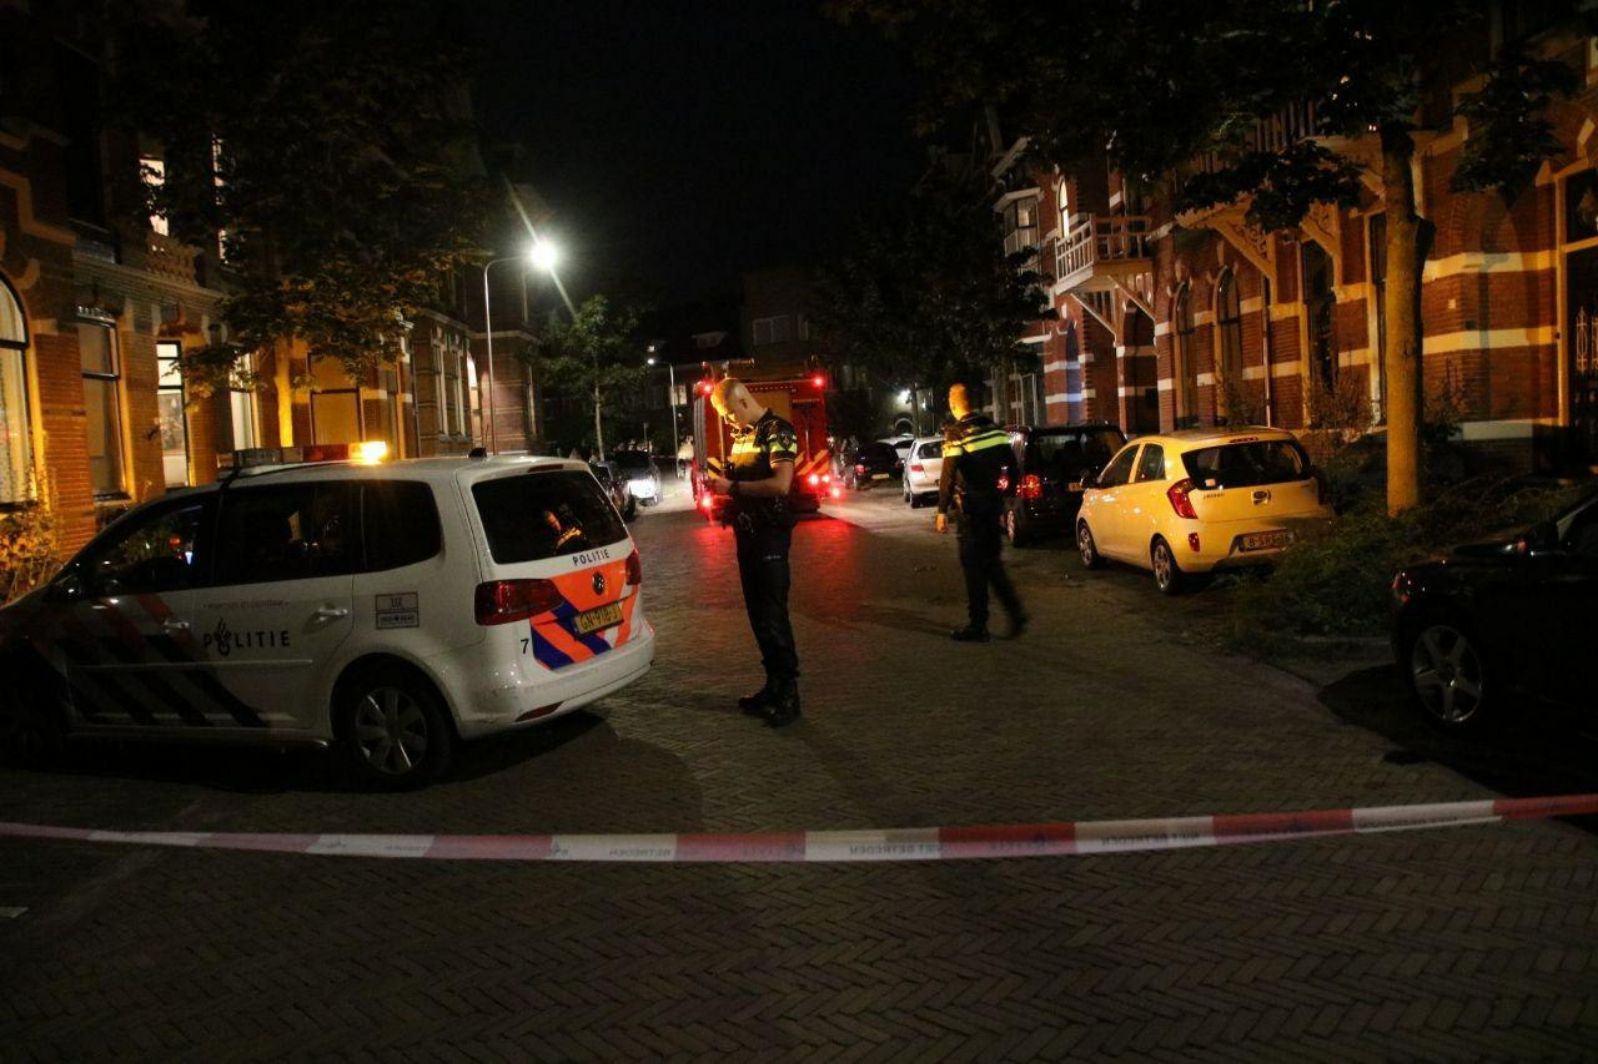 Zware vrachtwagen Gewend hefboom Stank door afzuigkap in woning Prins Hendrikstraat - RTV Focus